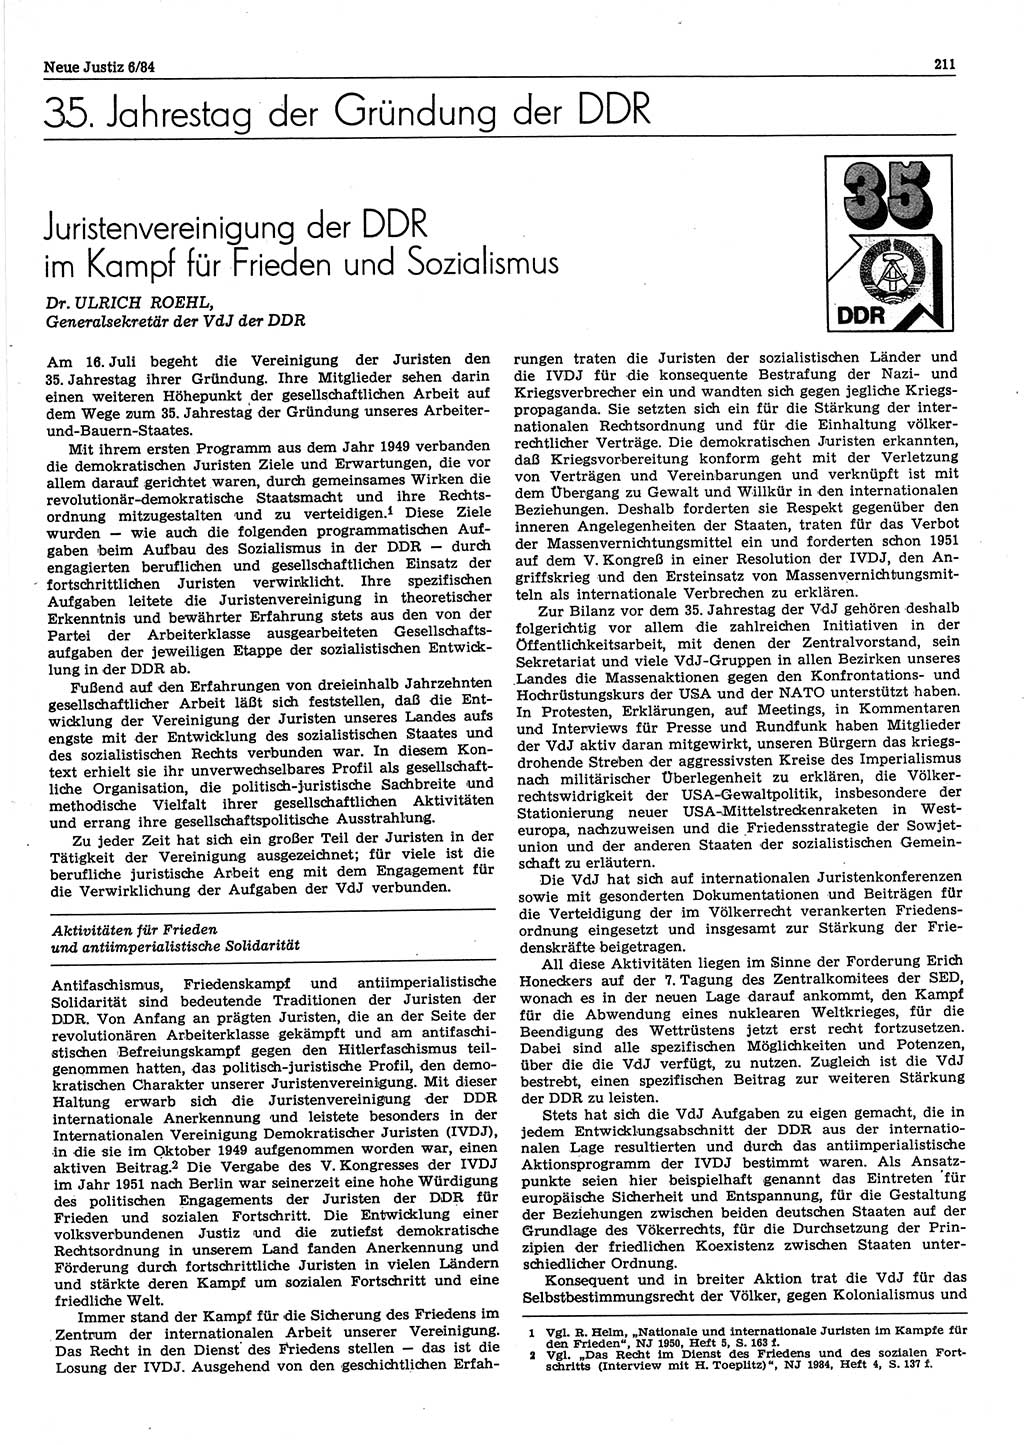 Neue Justiz (NJ), Zeitschrift für sozialistisches Recht und Gesetzlichkeit [Deutsche Demokratische Republik (DDR)], 38. Jahrgang 1984, Seite 211 (NJ DDR 1984, S. 211)